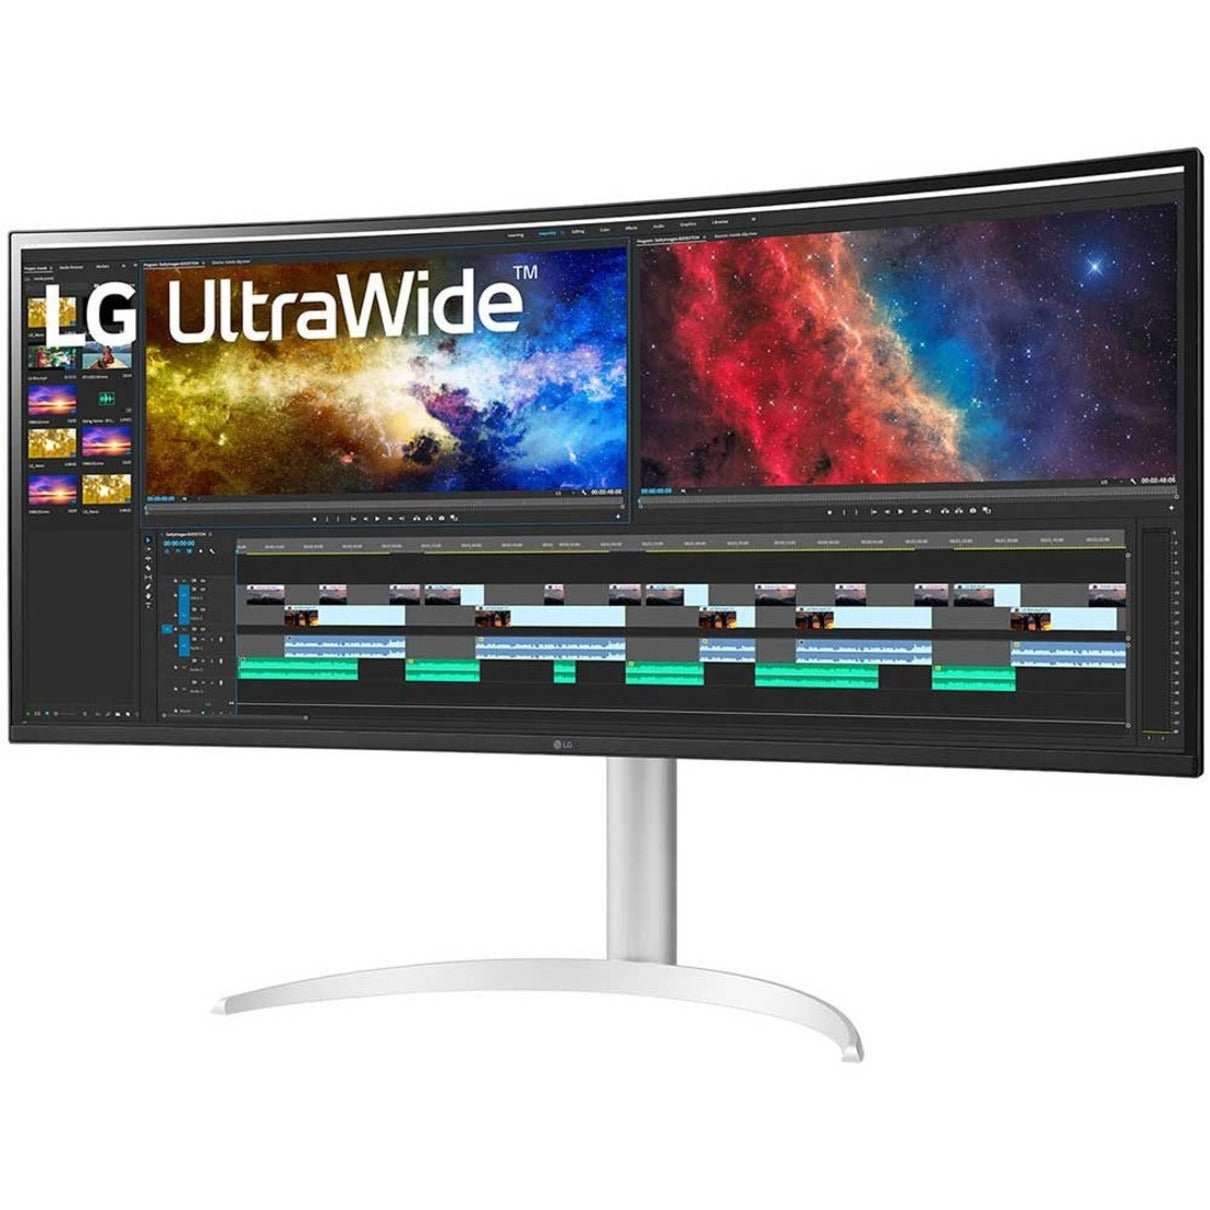 Monitor de juego de pantalla ancha LG Ultrawide 38BP85C-W LCD de 3840 x 1600 USB Tipo-C HDMI DP AMD FreeSync 2 HDMI 300 Nits 95% DCI-P3 (CIE 1976) 1.07 Mil Millones de Colores Garantía de 3 Años. LG se traduce como "LG" en español.